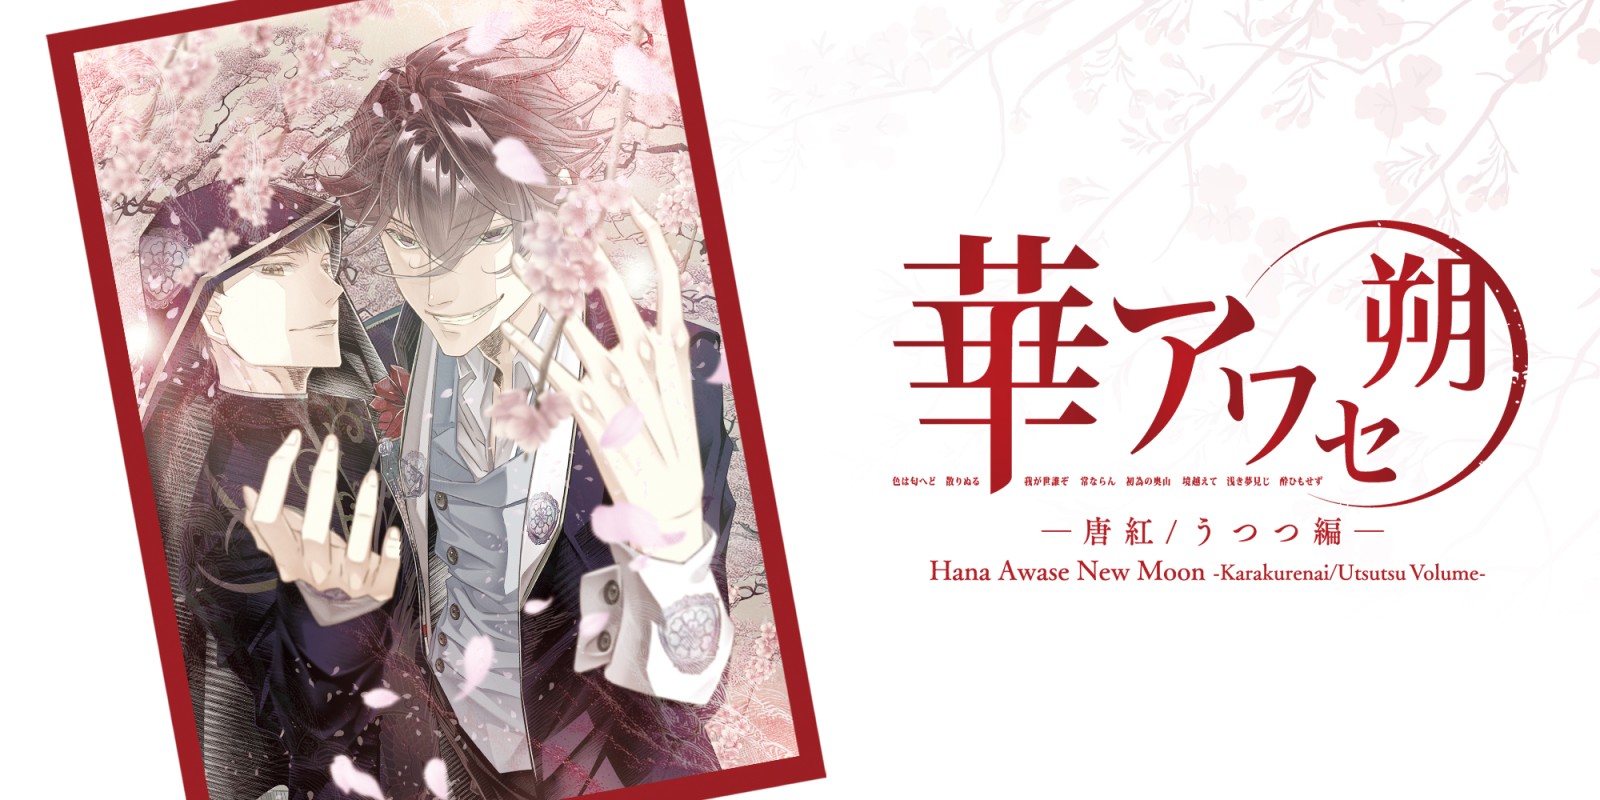 Hana Awase New Moon -Karakurenai/Utsutsu Volume-